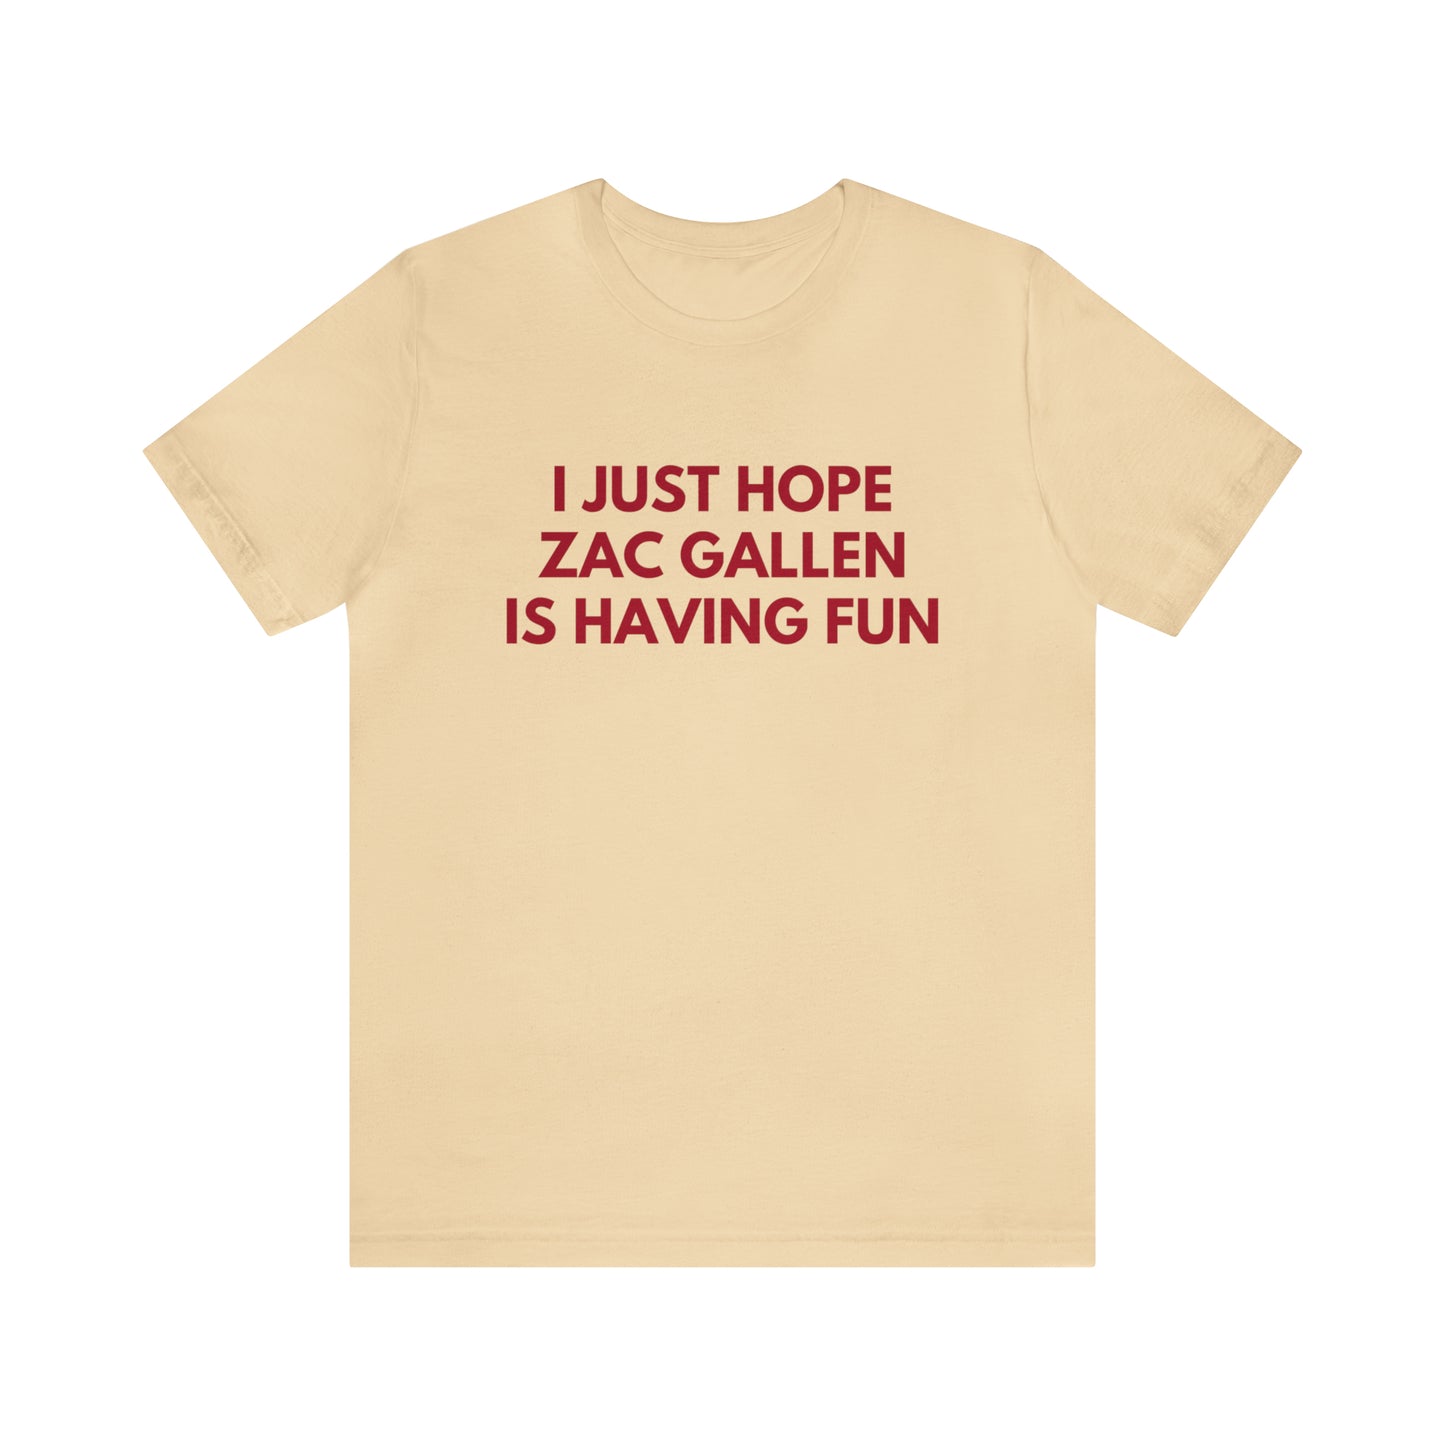 Zac Gallen Having Fun - Unisex T-shirt